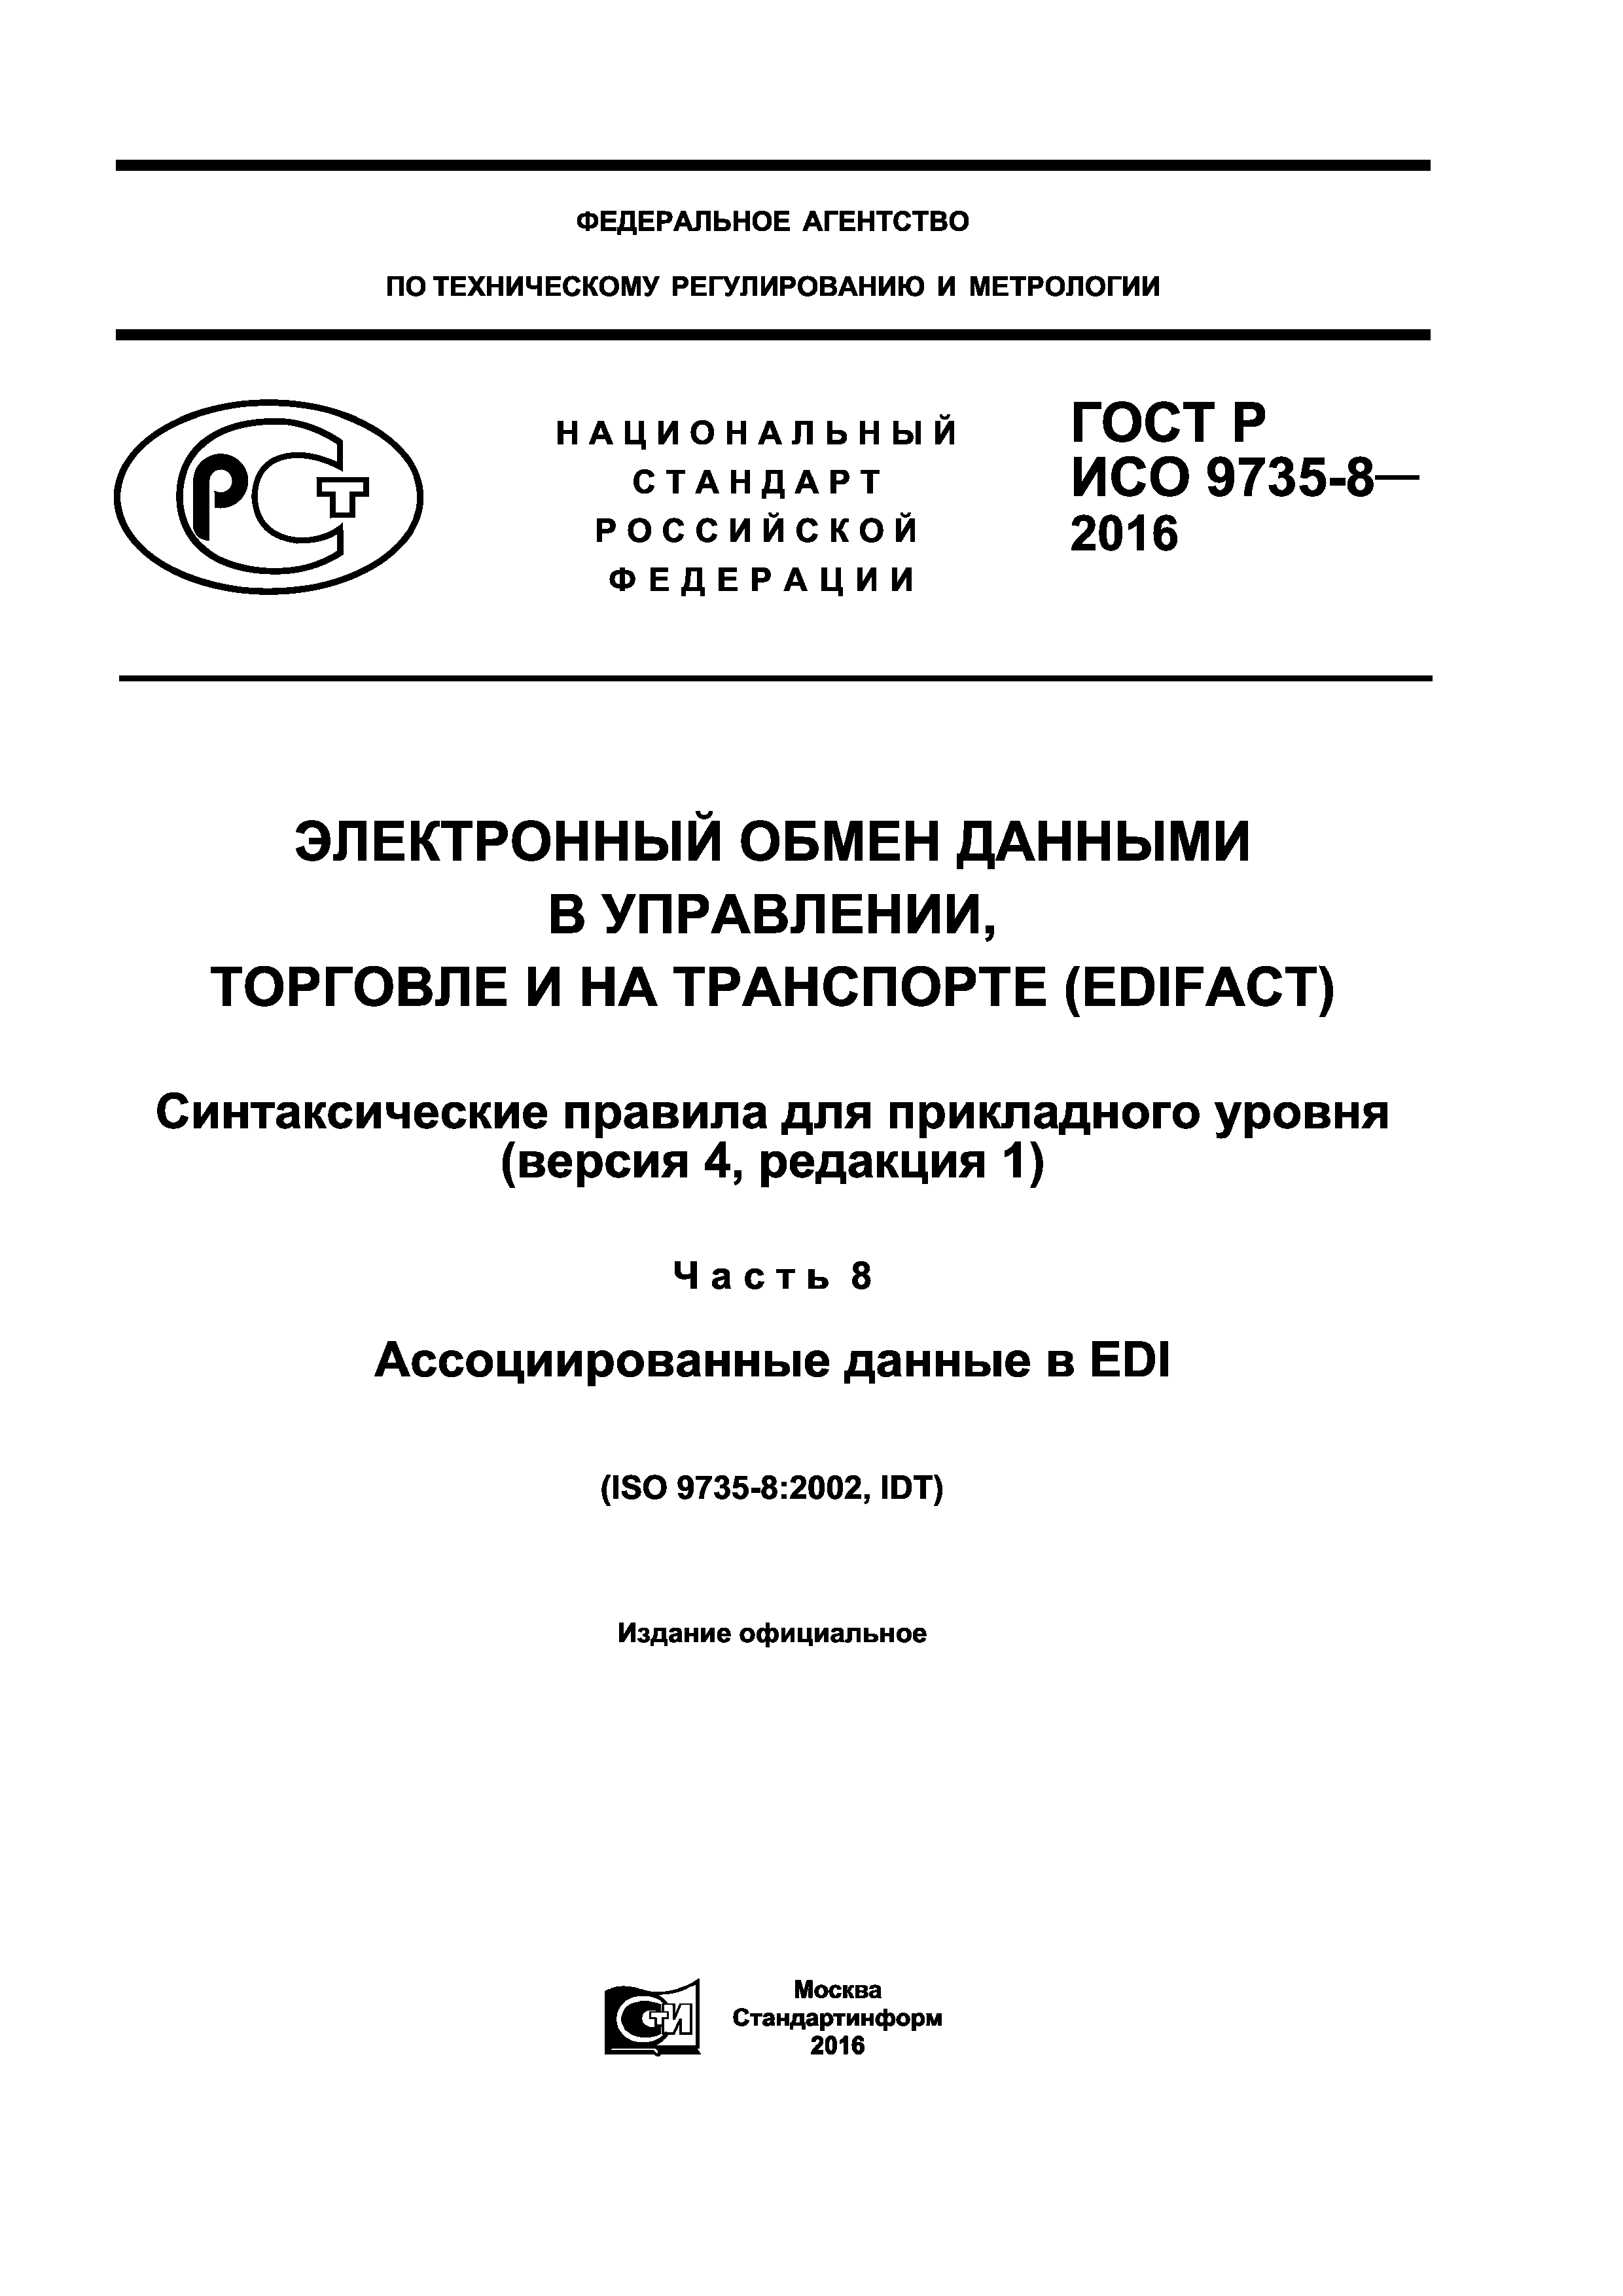 ГОСТ Р ИСО 9735-8-2016